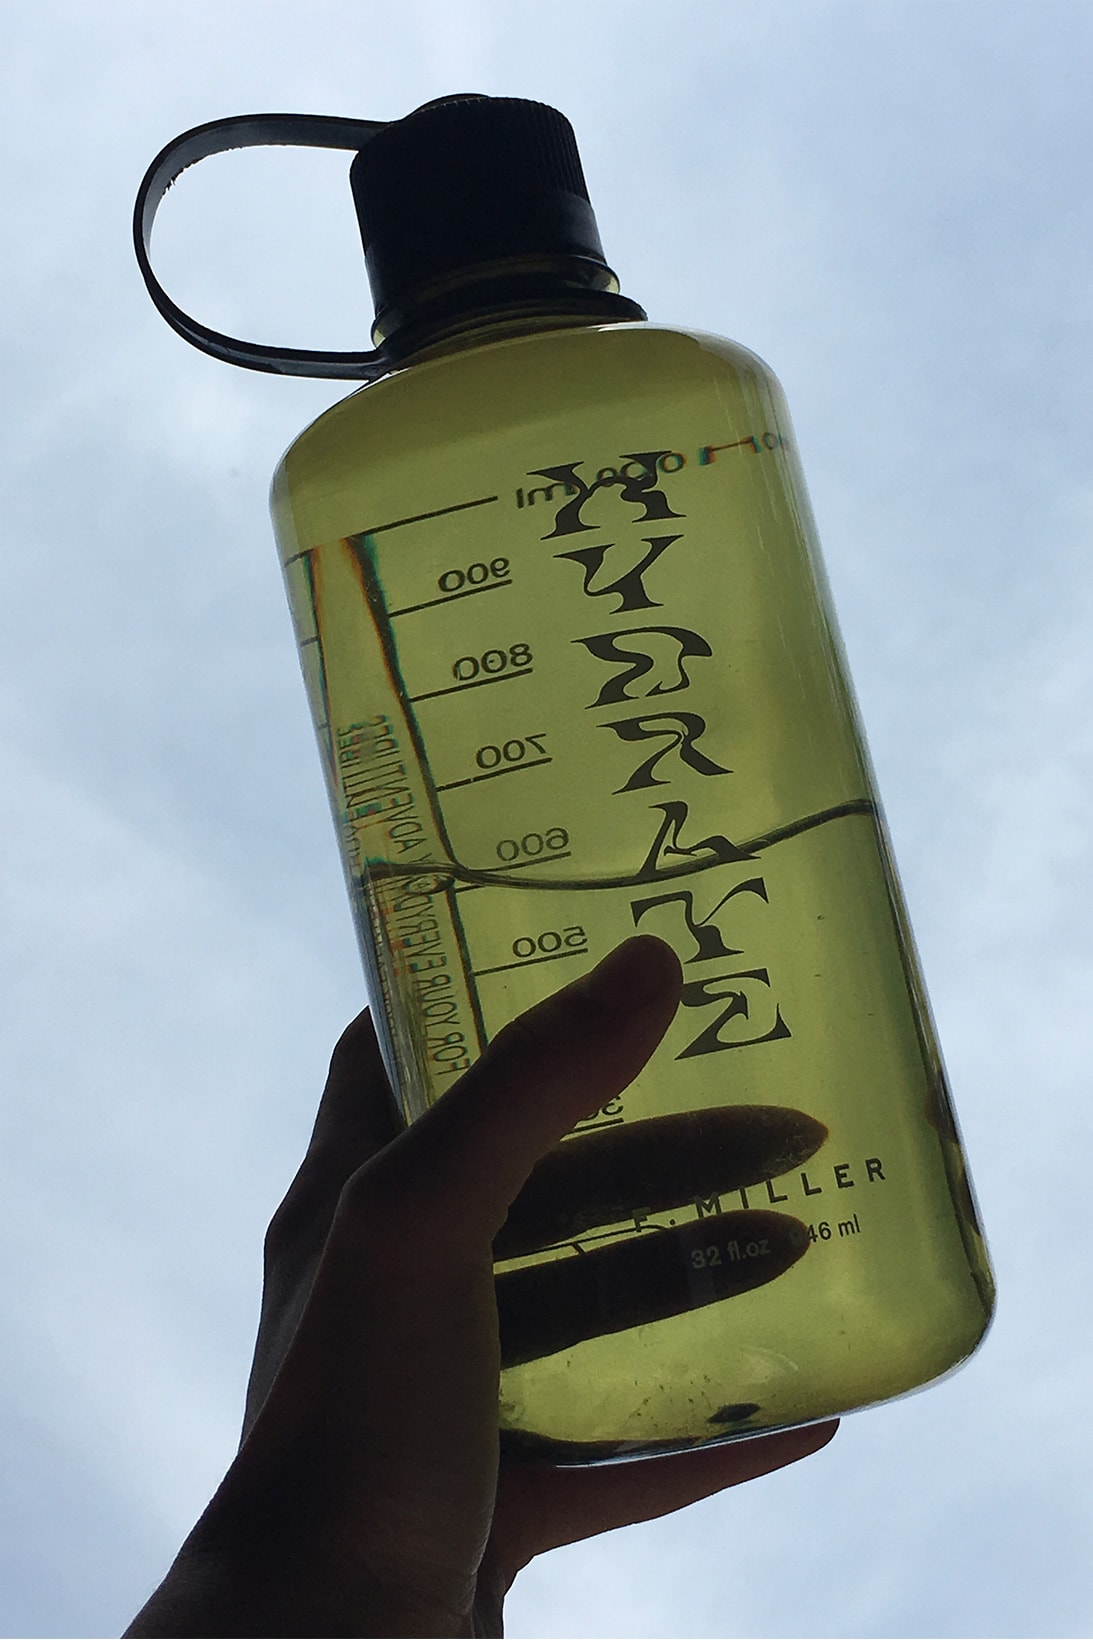 f. miller hydrate nalgene water bottle restock marsha p johnson institute donation skincare beauty